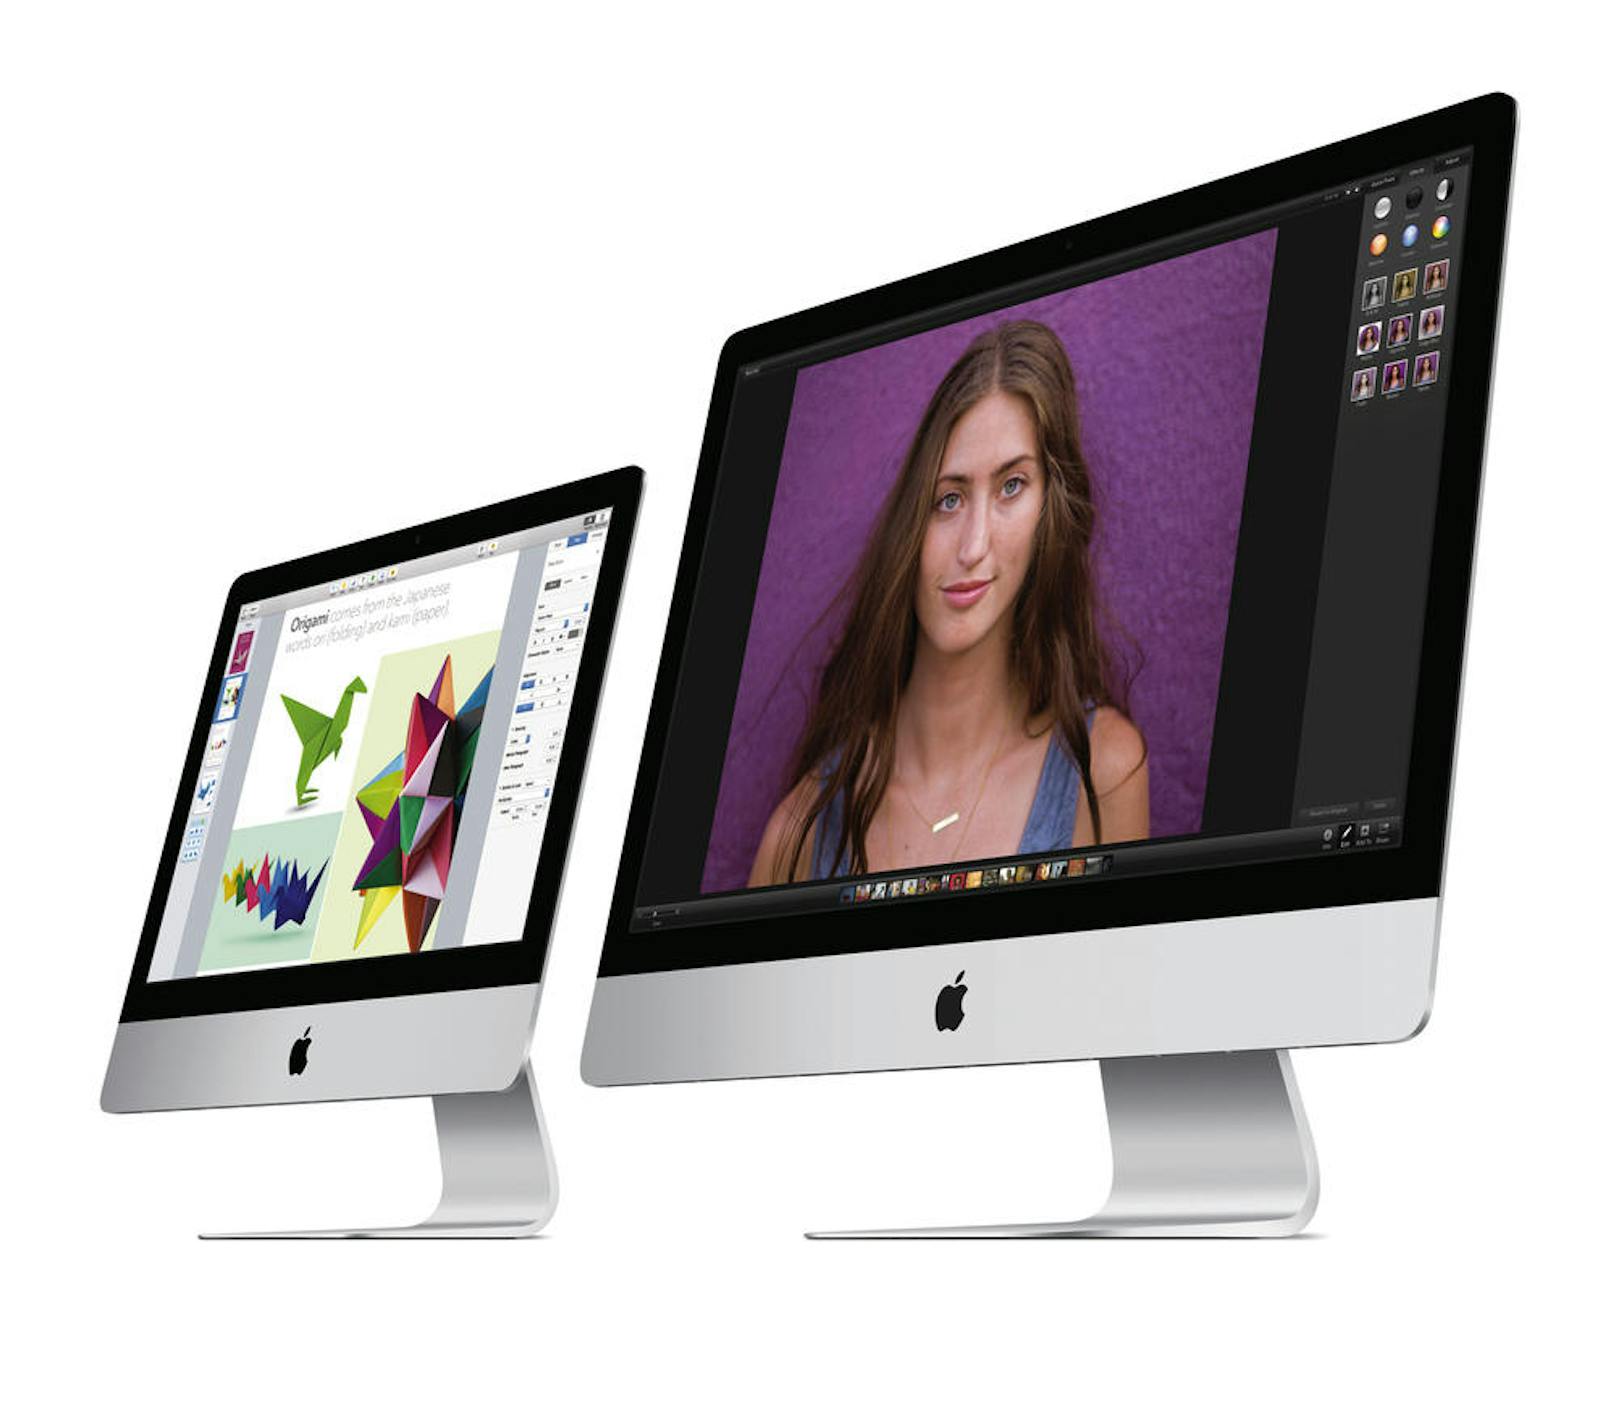 Auch für macOS High Sierra hat Apple diese Woche einen zusätzlichen Patch ausgeliefert. Dieser schließt die gleichen Lücken auf Macs.